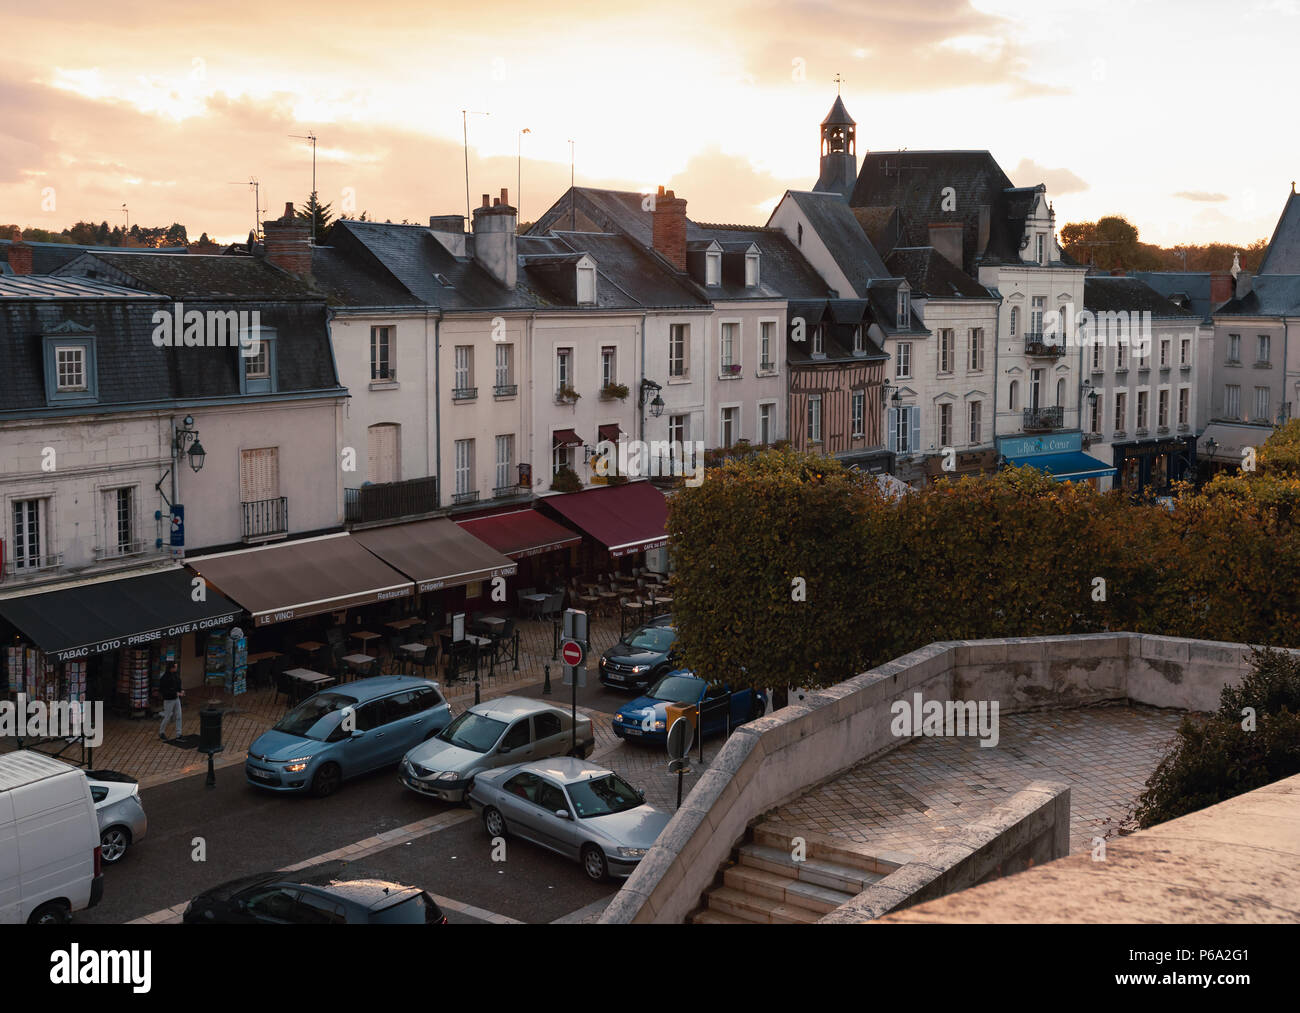 Amboise, France - le 6 novembre 2016 : paysage urbain de petite ville française située dans le département de Seine-et-Marne la Vallée de la Loire. Livin traditionnel vieux Banque D'Images